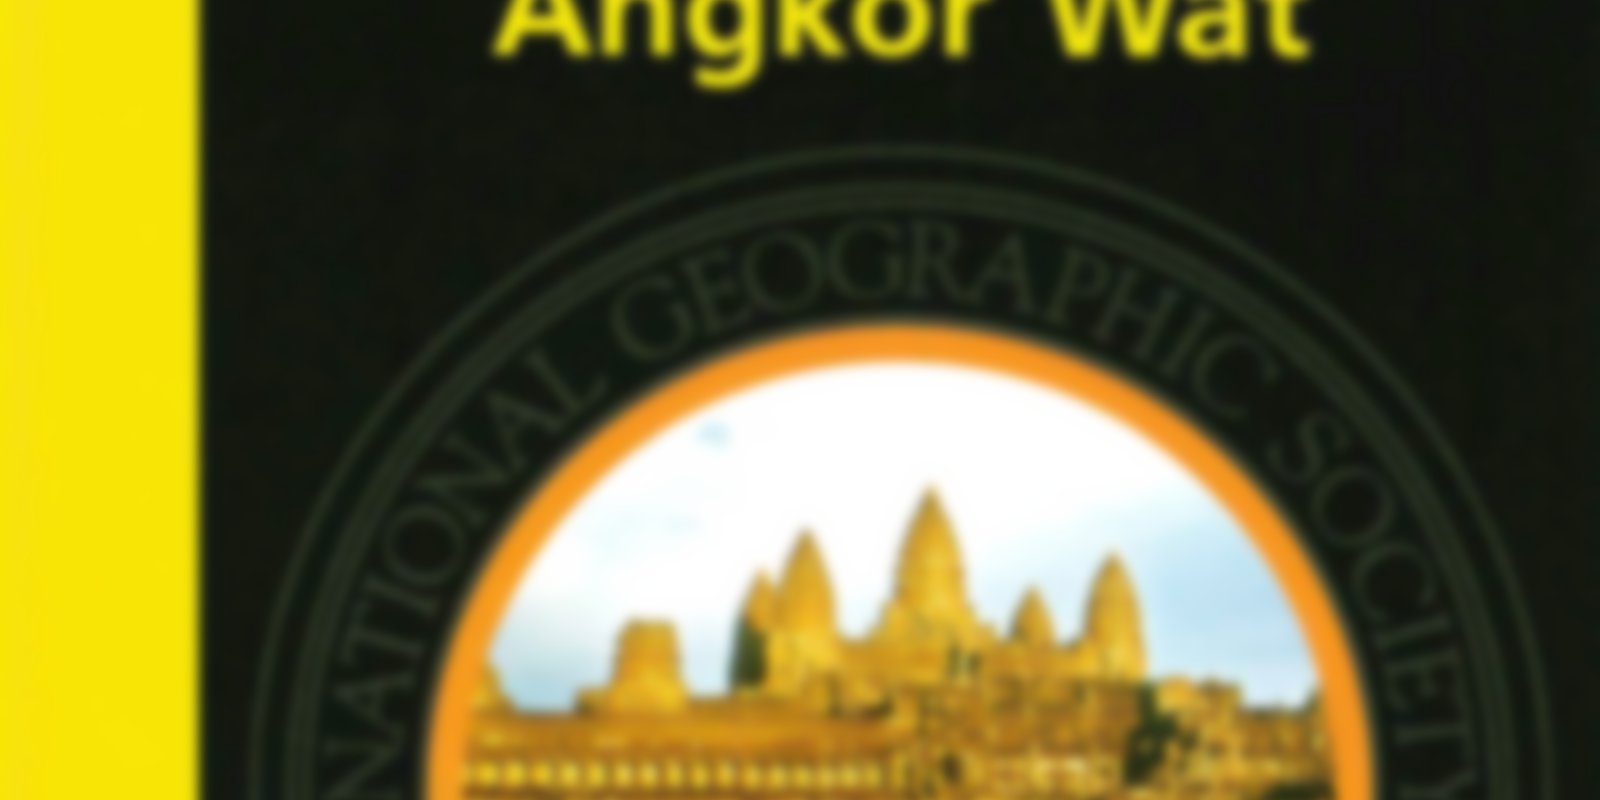 National Geographic - Der Glanz von Angkor Wat & Angkor & Im Reich der Khmer